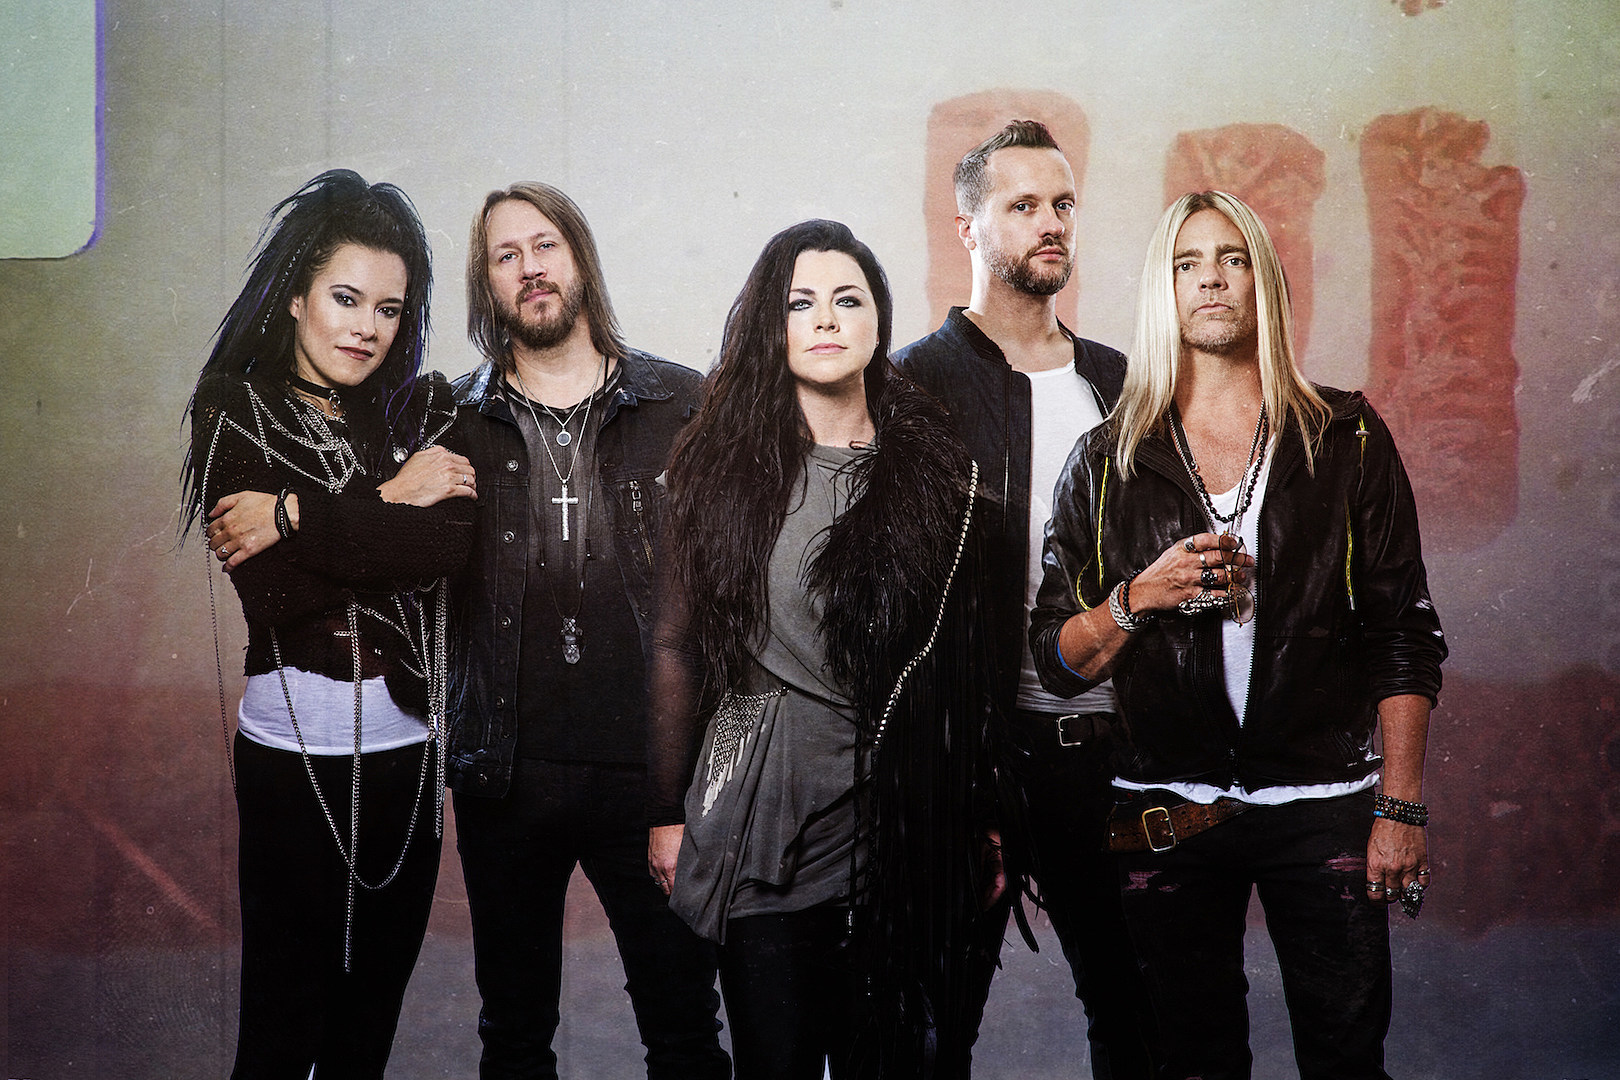 Группа Evanescence анонсировала дату выхода нового альбома и представила новую песню с релиза «Better Without You»